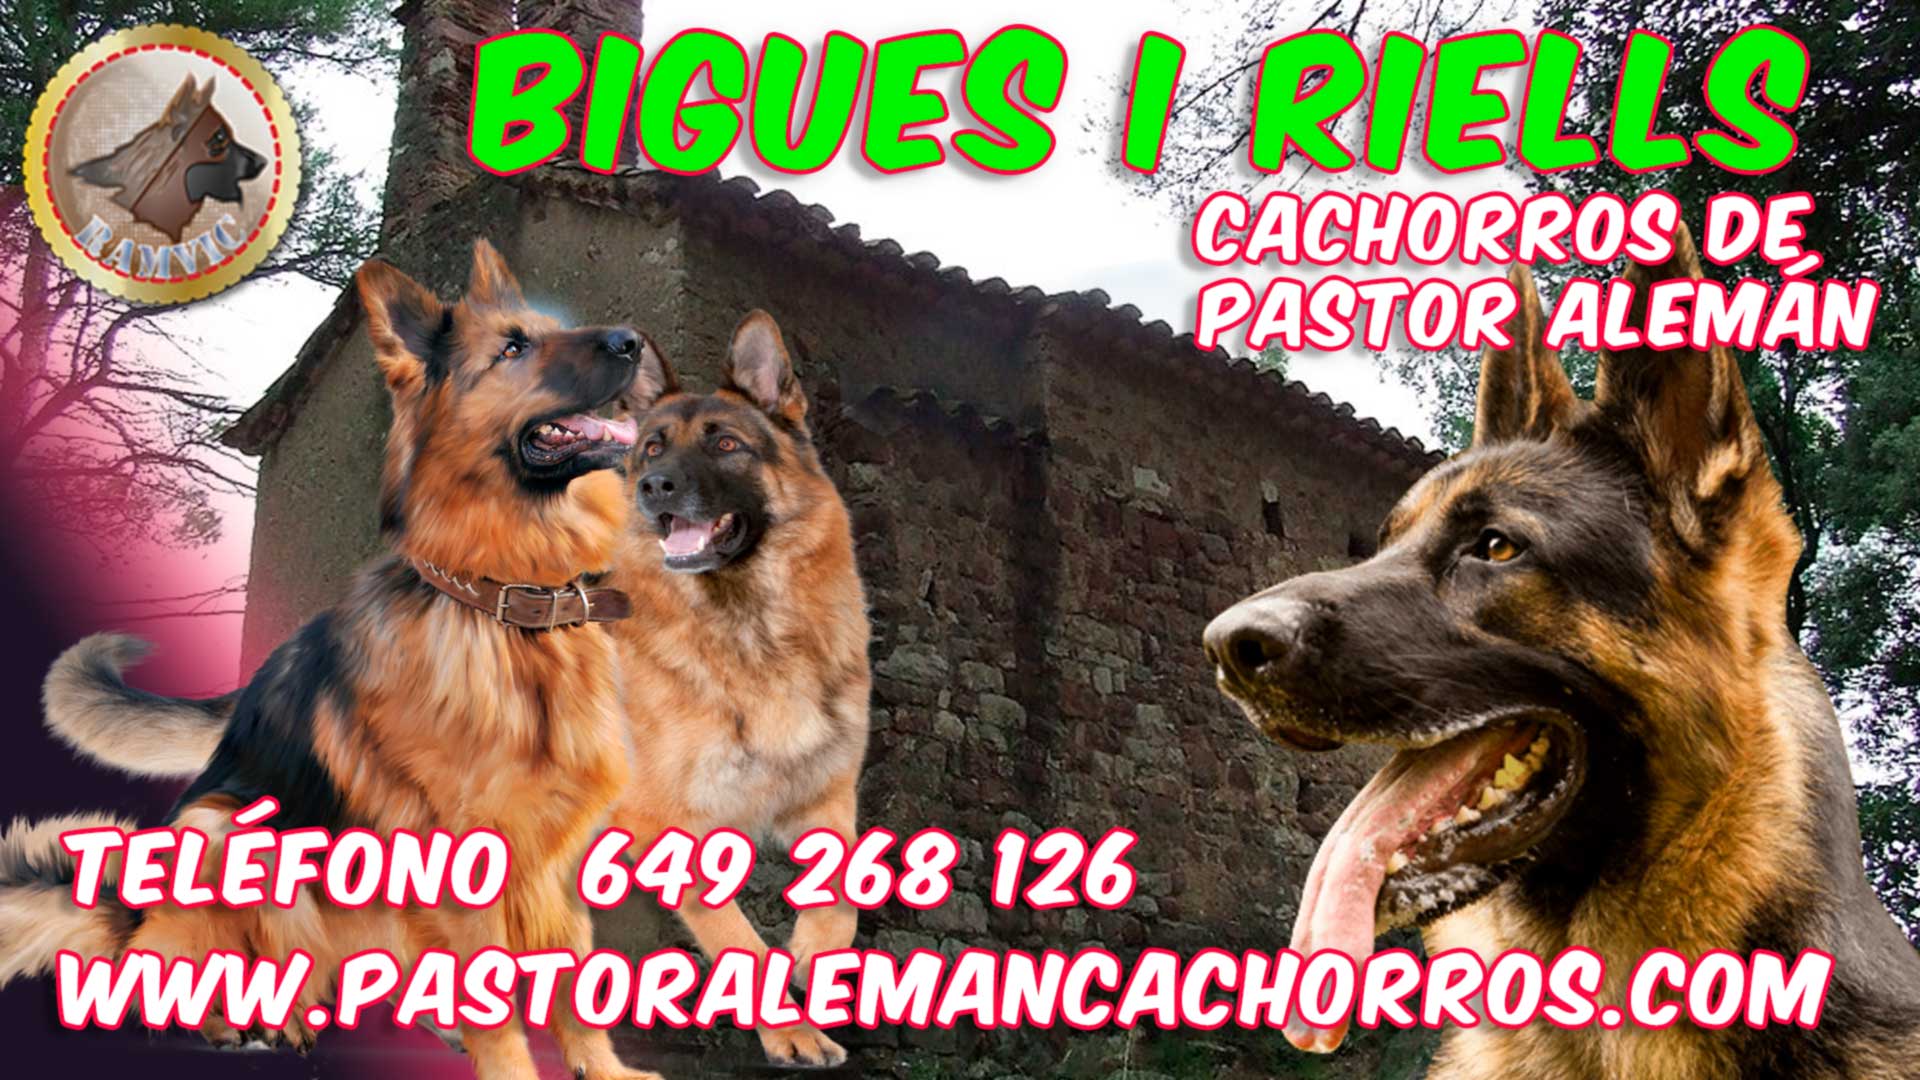 Comprar cachorros de pastor alemán en Bigues i Riells del Fai, Barcelona.